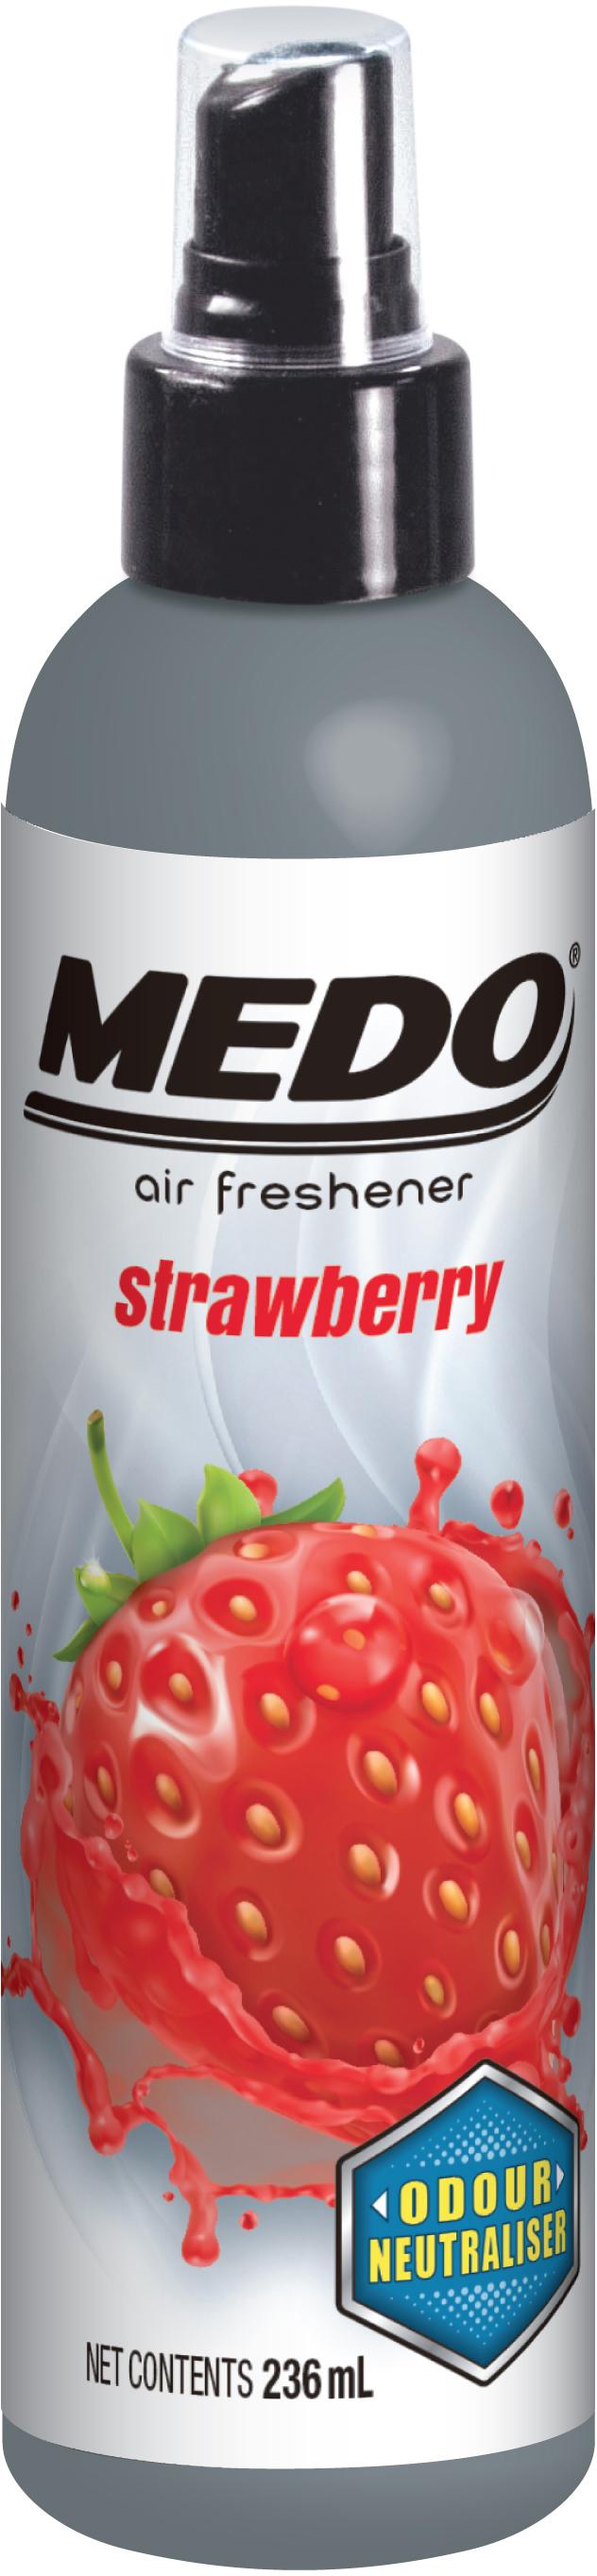 Medo Strawberry Spray Air Freshener 8Oz